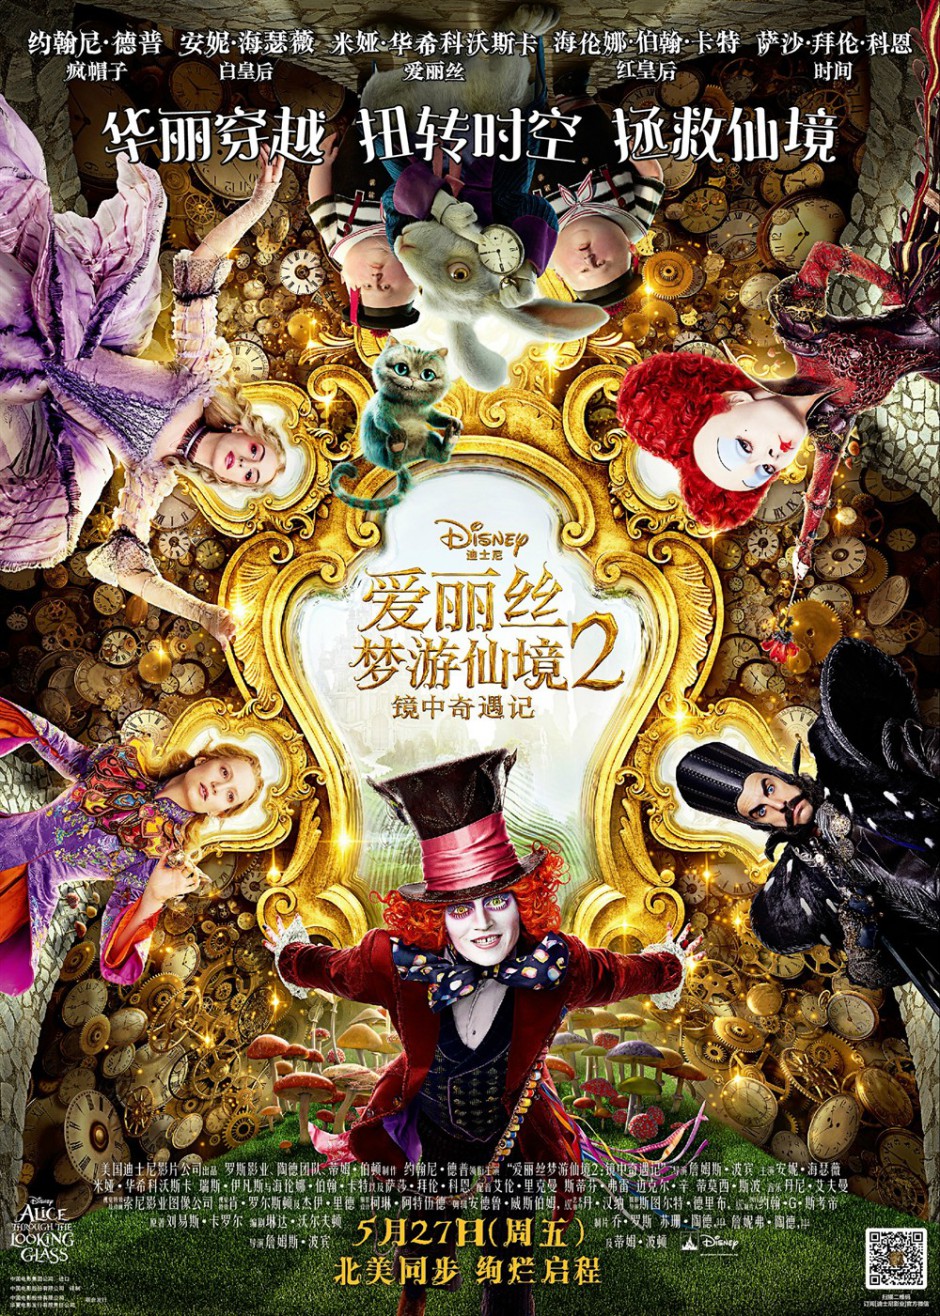 奇幻冒险电影推荐《爱丽丝梦游仙境2：镜中奇遇记》角色海报